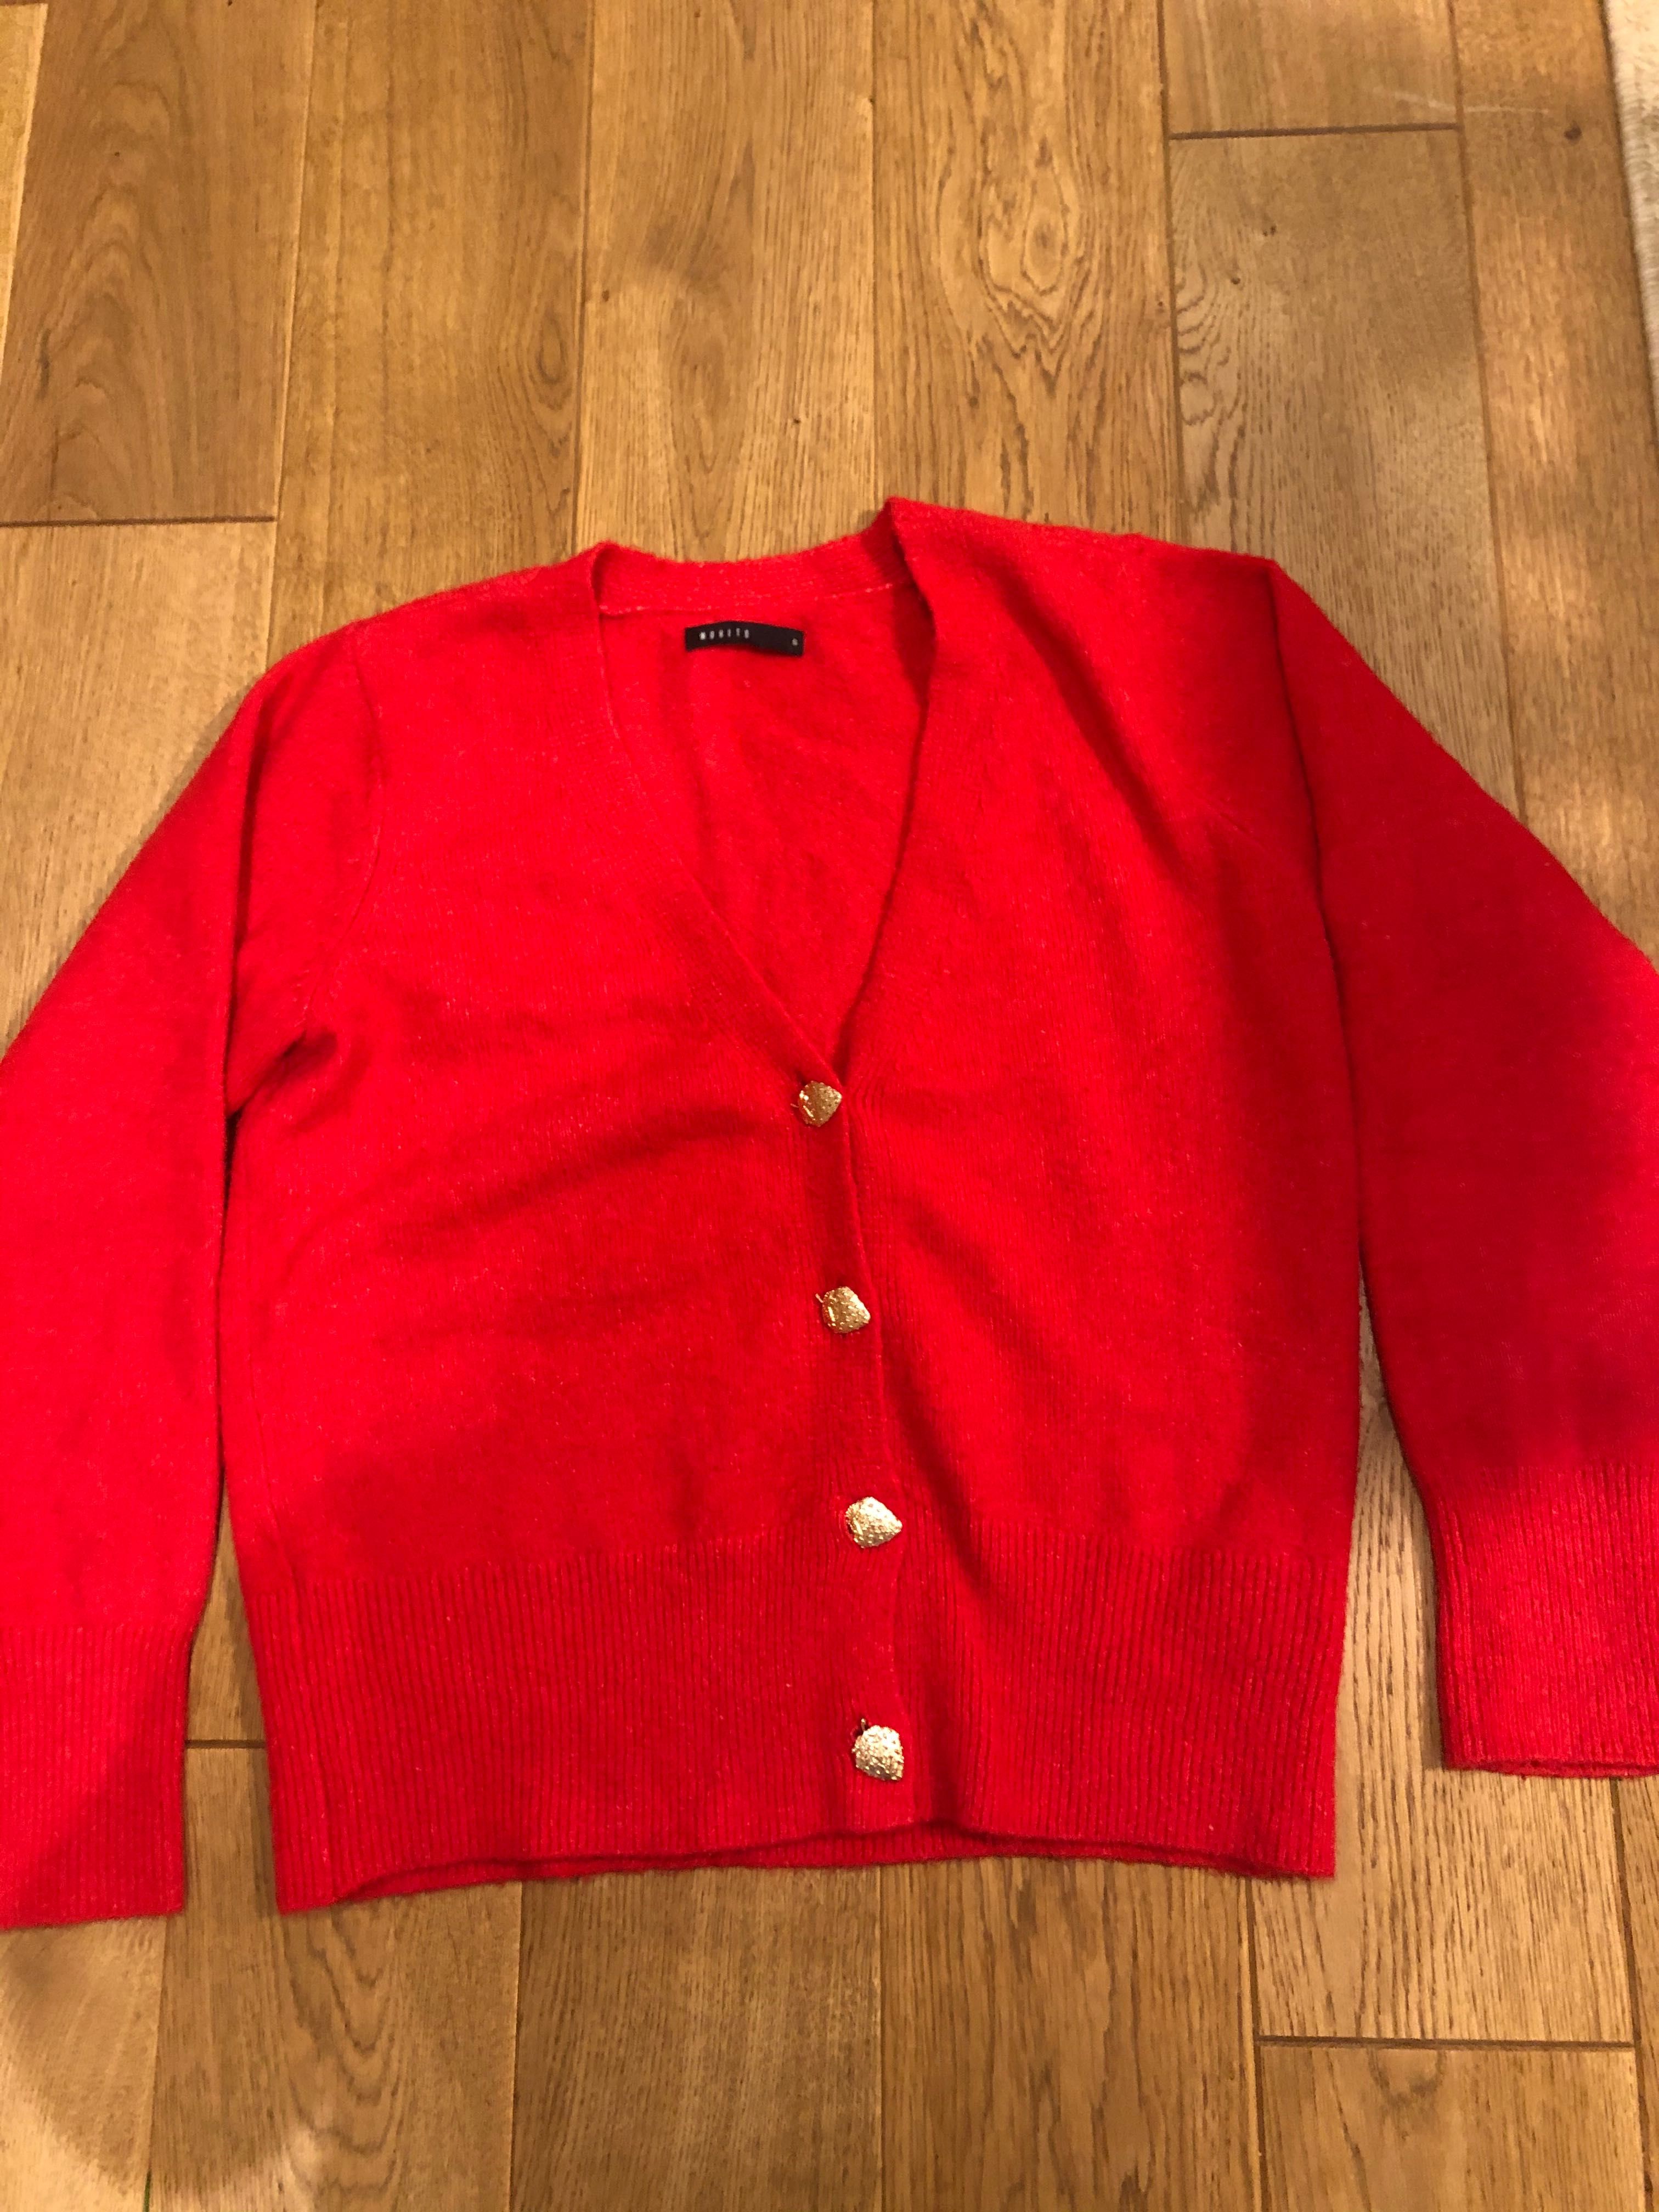 Czerwony sweterek, zapinany, mohito, rozmiar M/L, cena 50,00zl